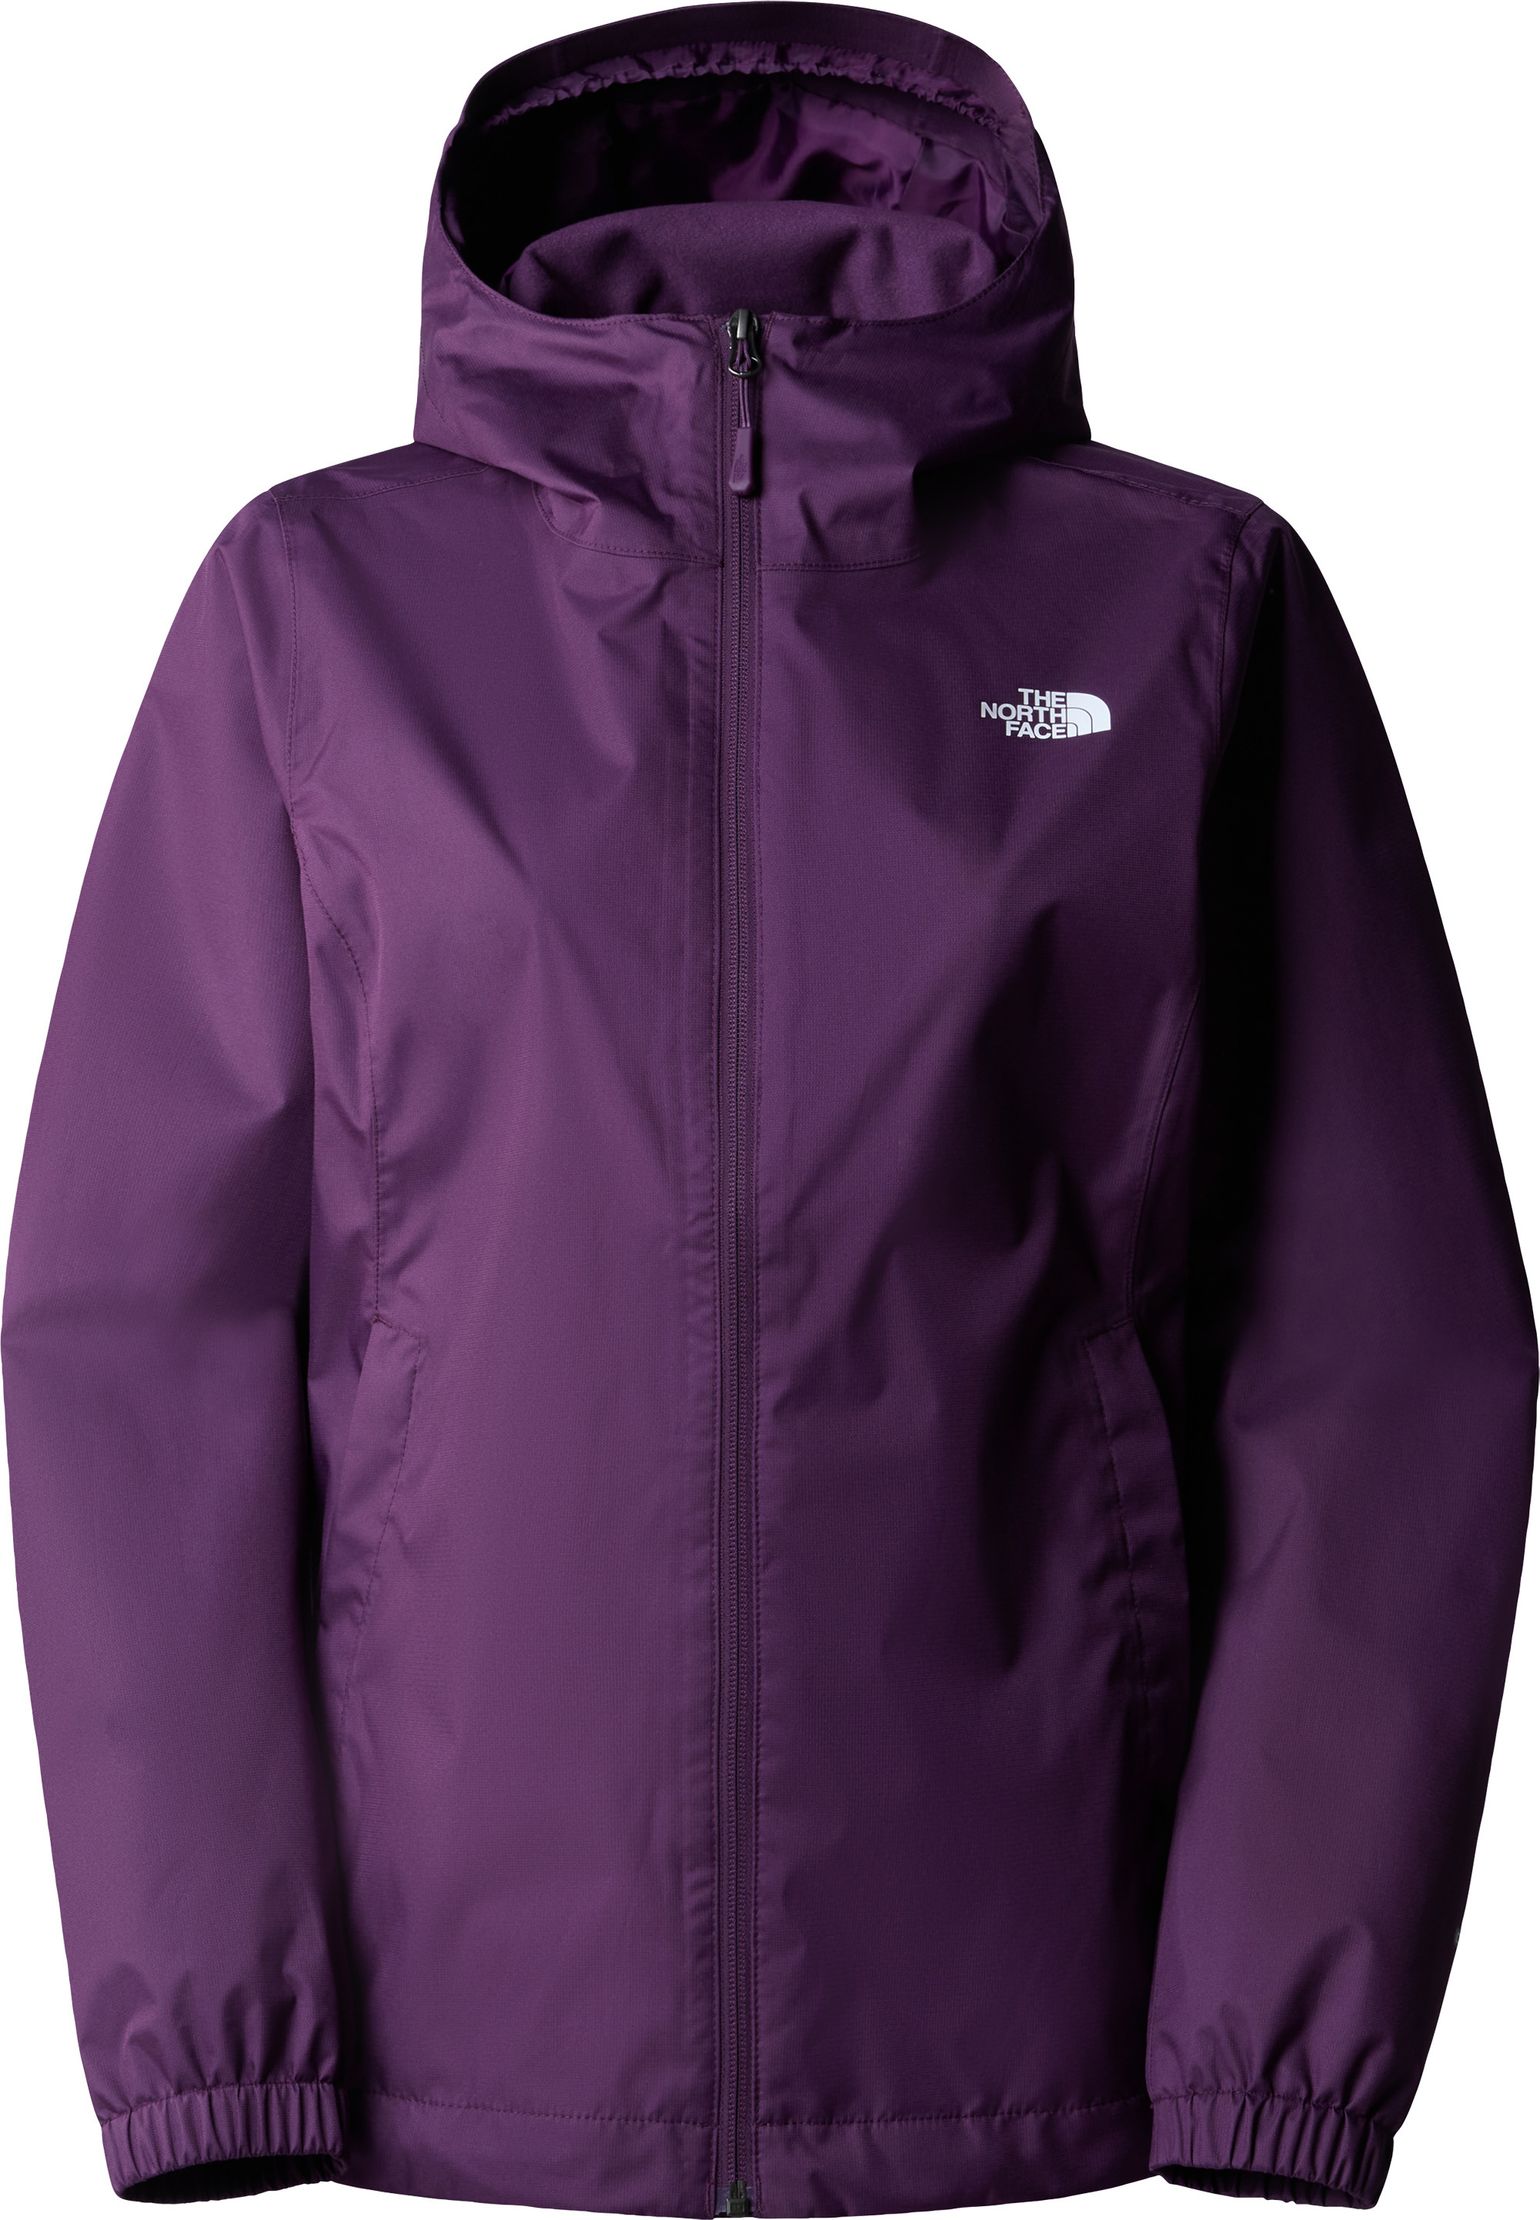 Women's Quest Jacket Black Currant Purple